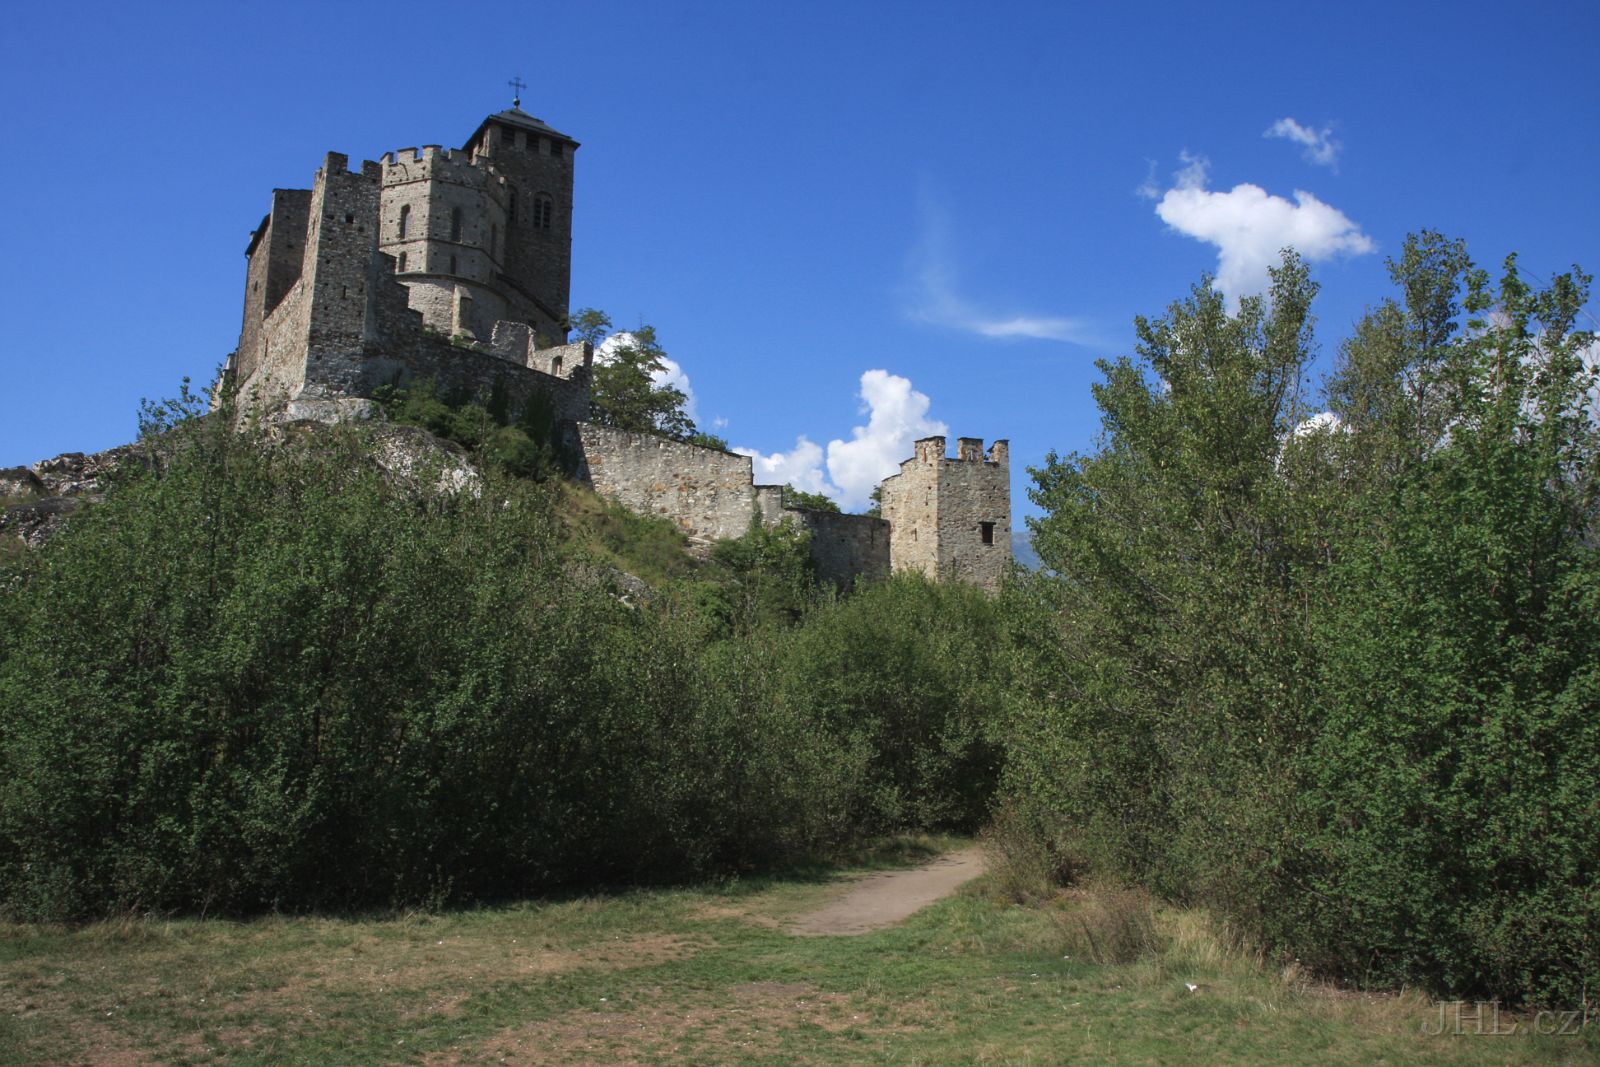 080827cc039.JPG - Sion - Château de Valère